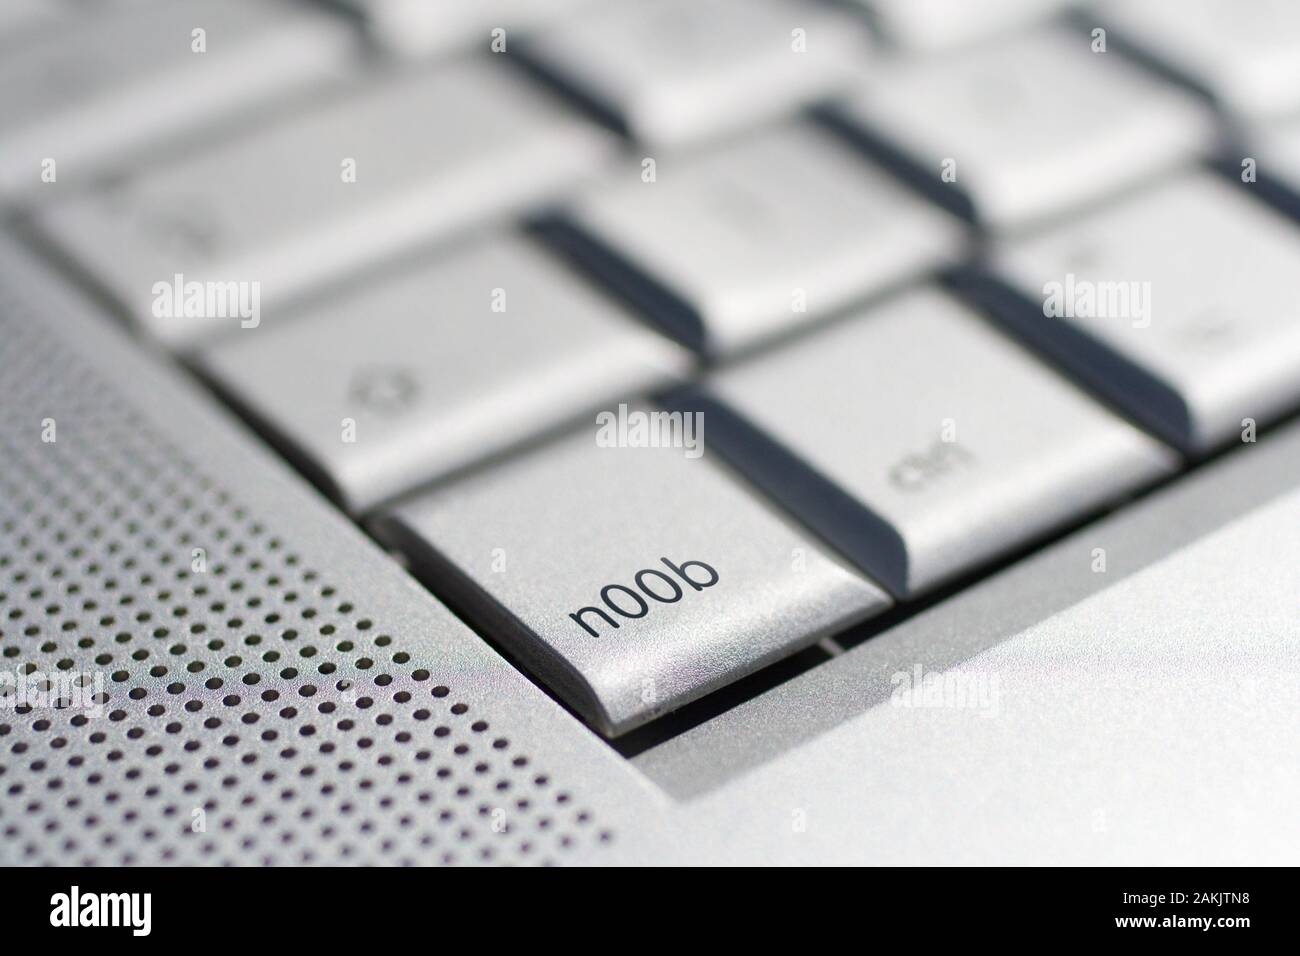 Immagine ravvicinata di una tastiera portatile con un 'nOOb' il tasto di messa a fuoco Foto Stock